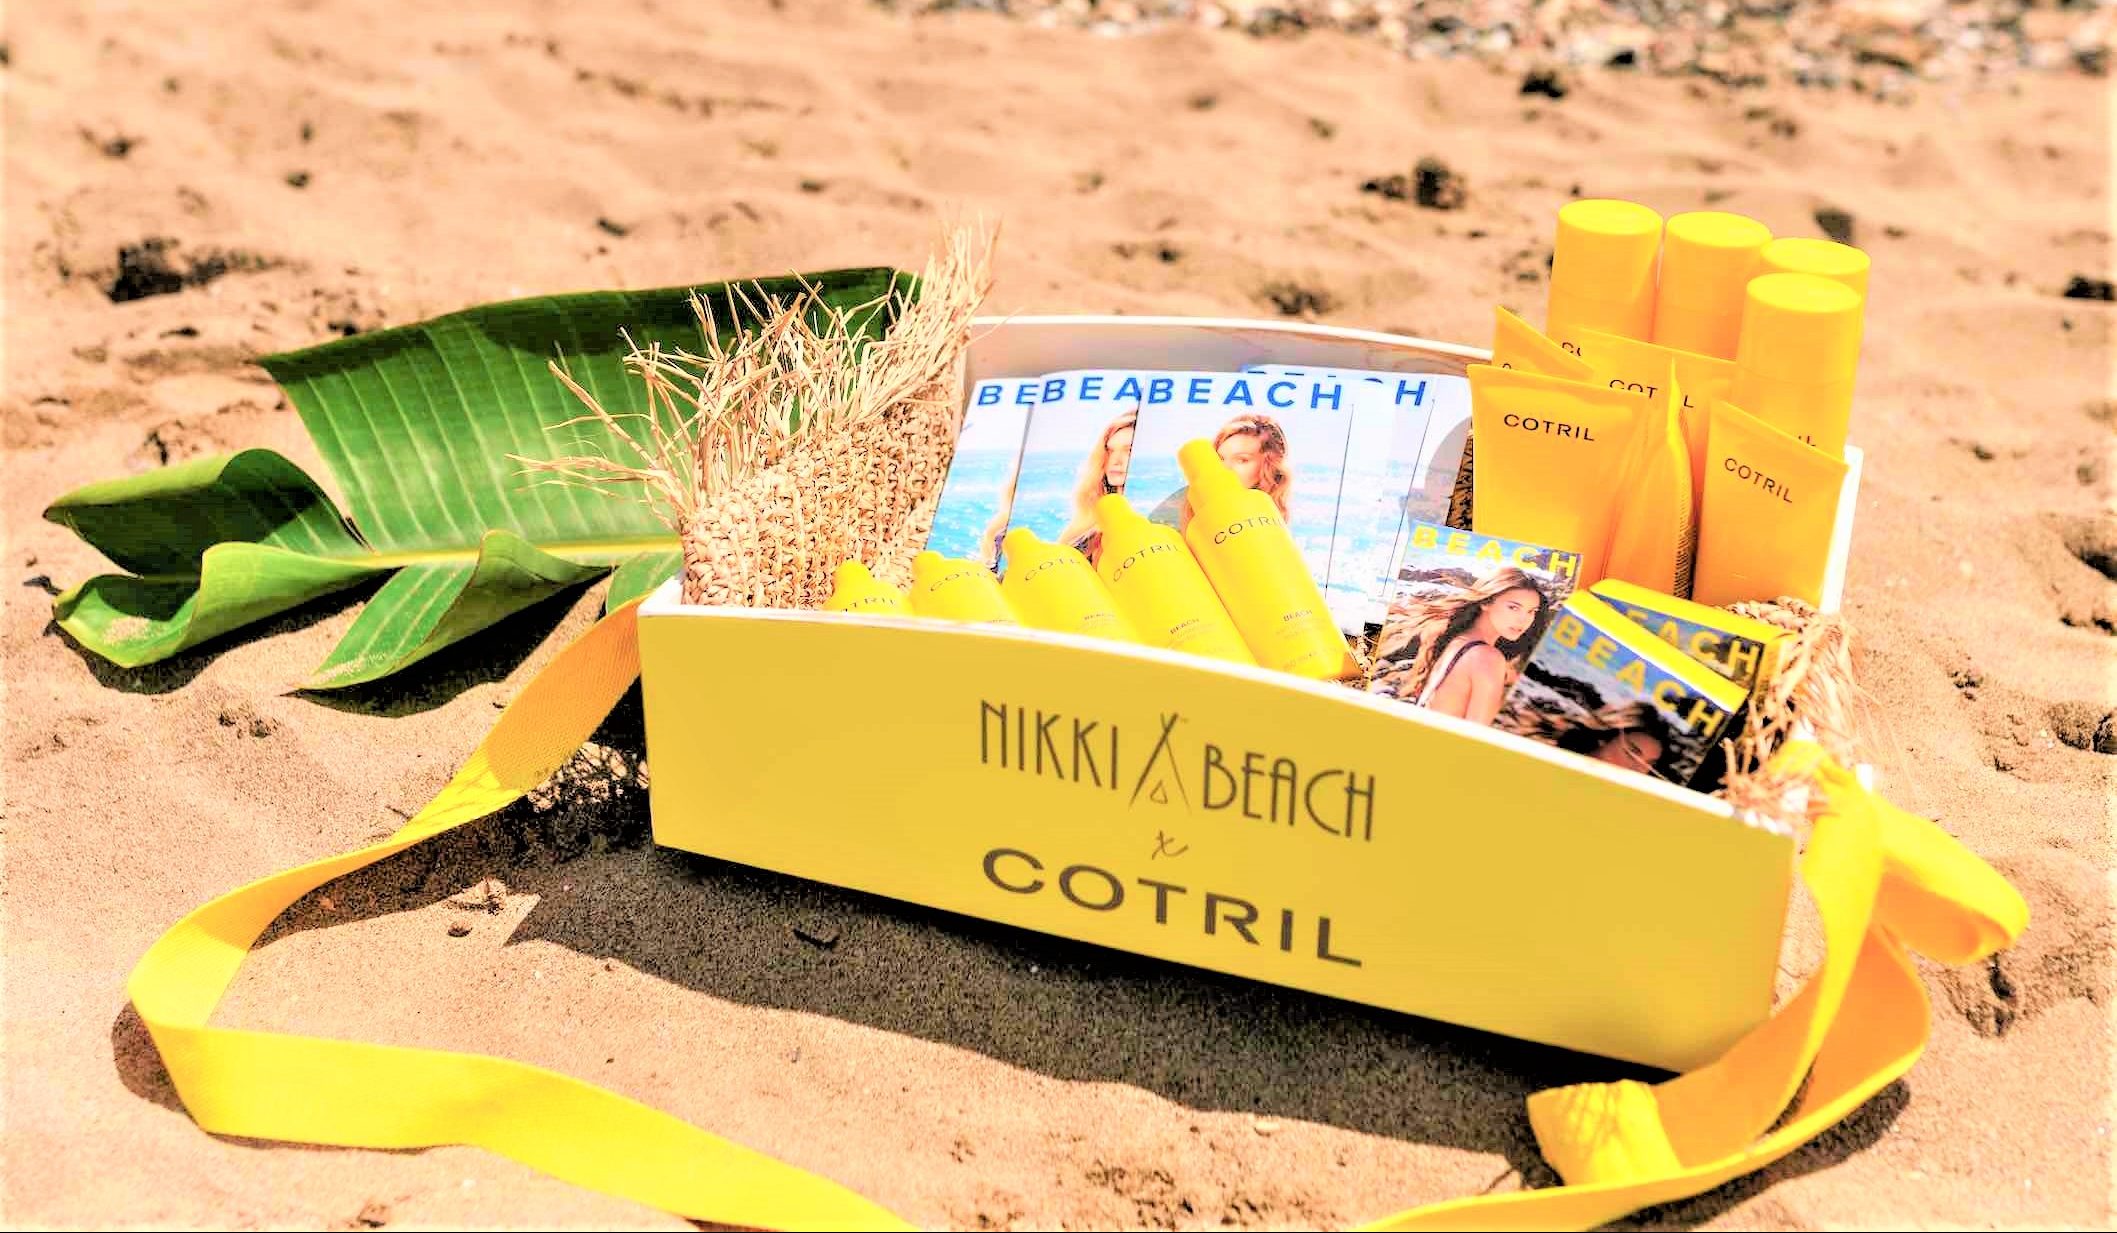 Nikki Beach e Cotril insieme per un’estate all’insegna della bellezza